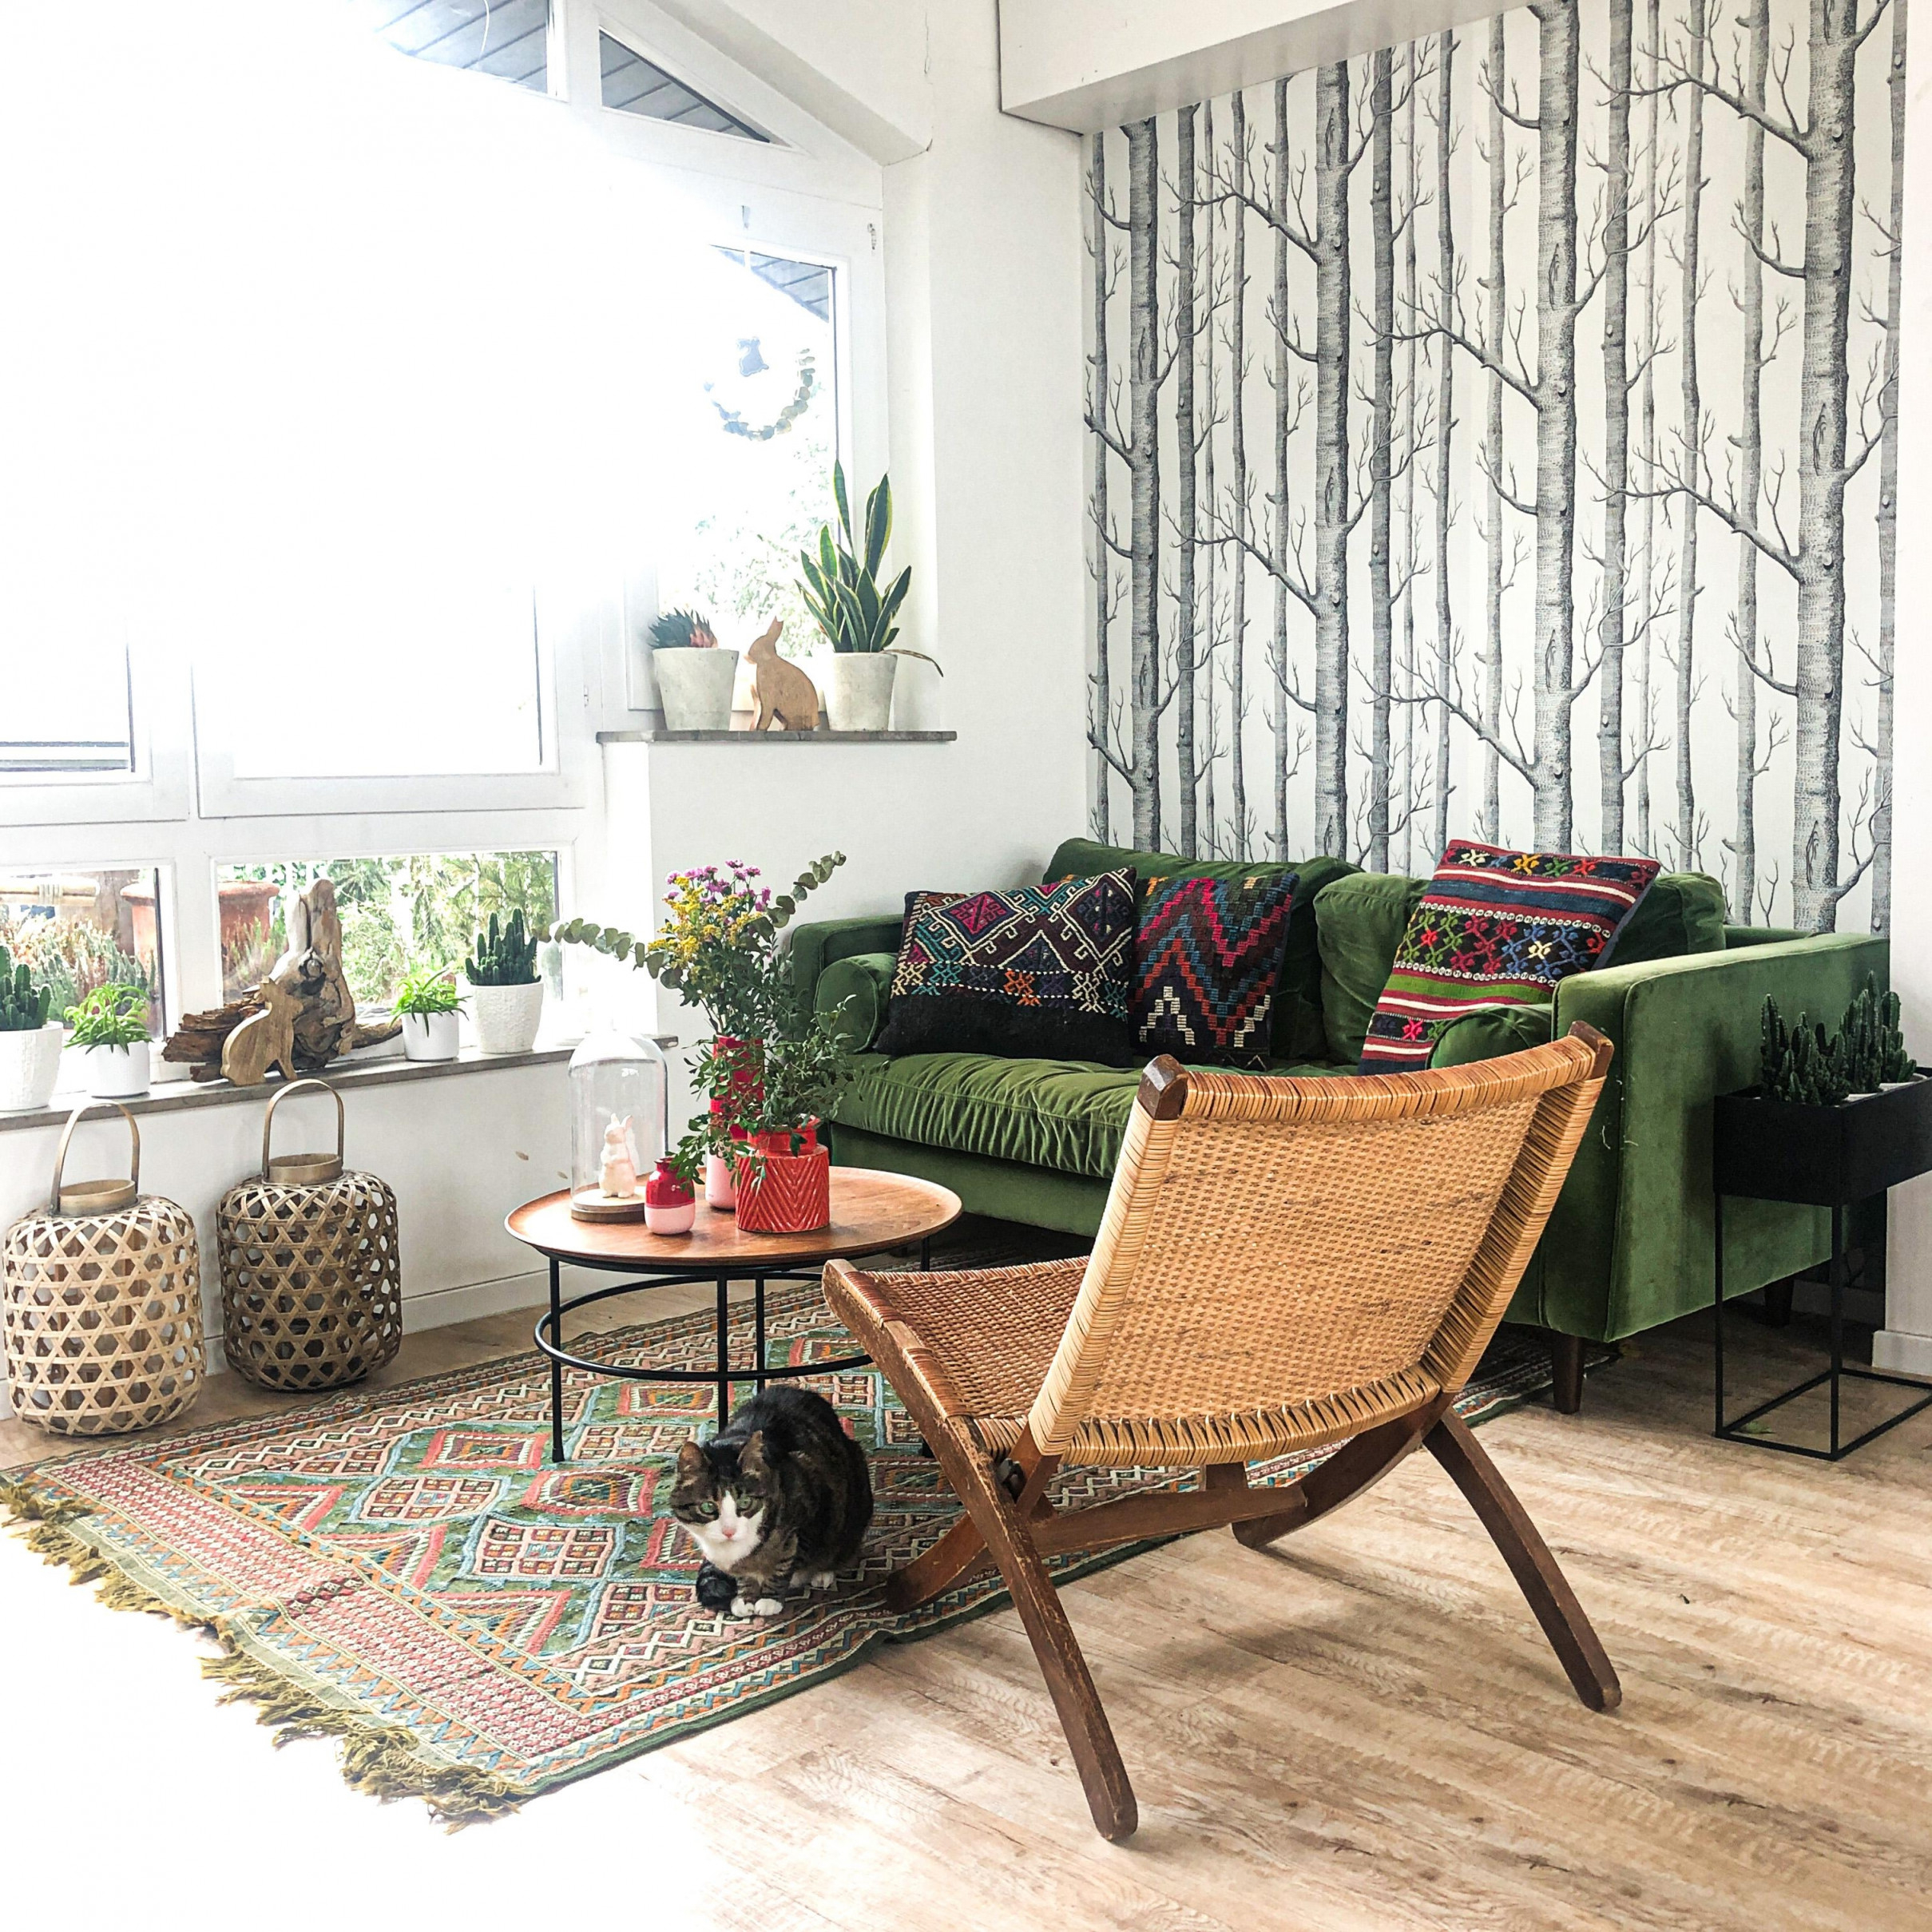 Grünes Sofa • Bilder  Ideen • Couch von Wohnzimmer Ideen Grün Photo